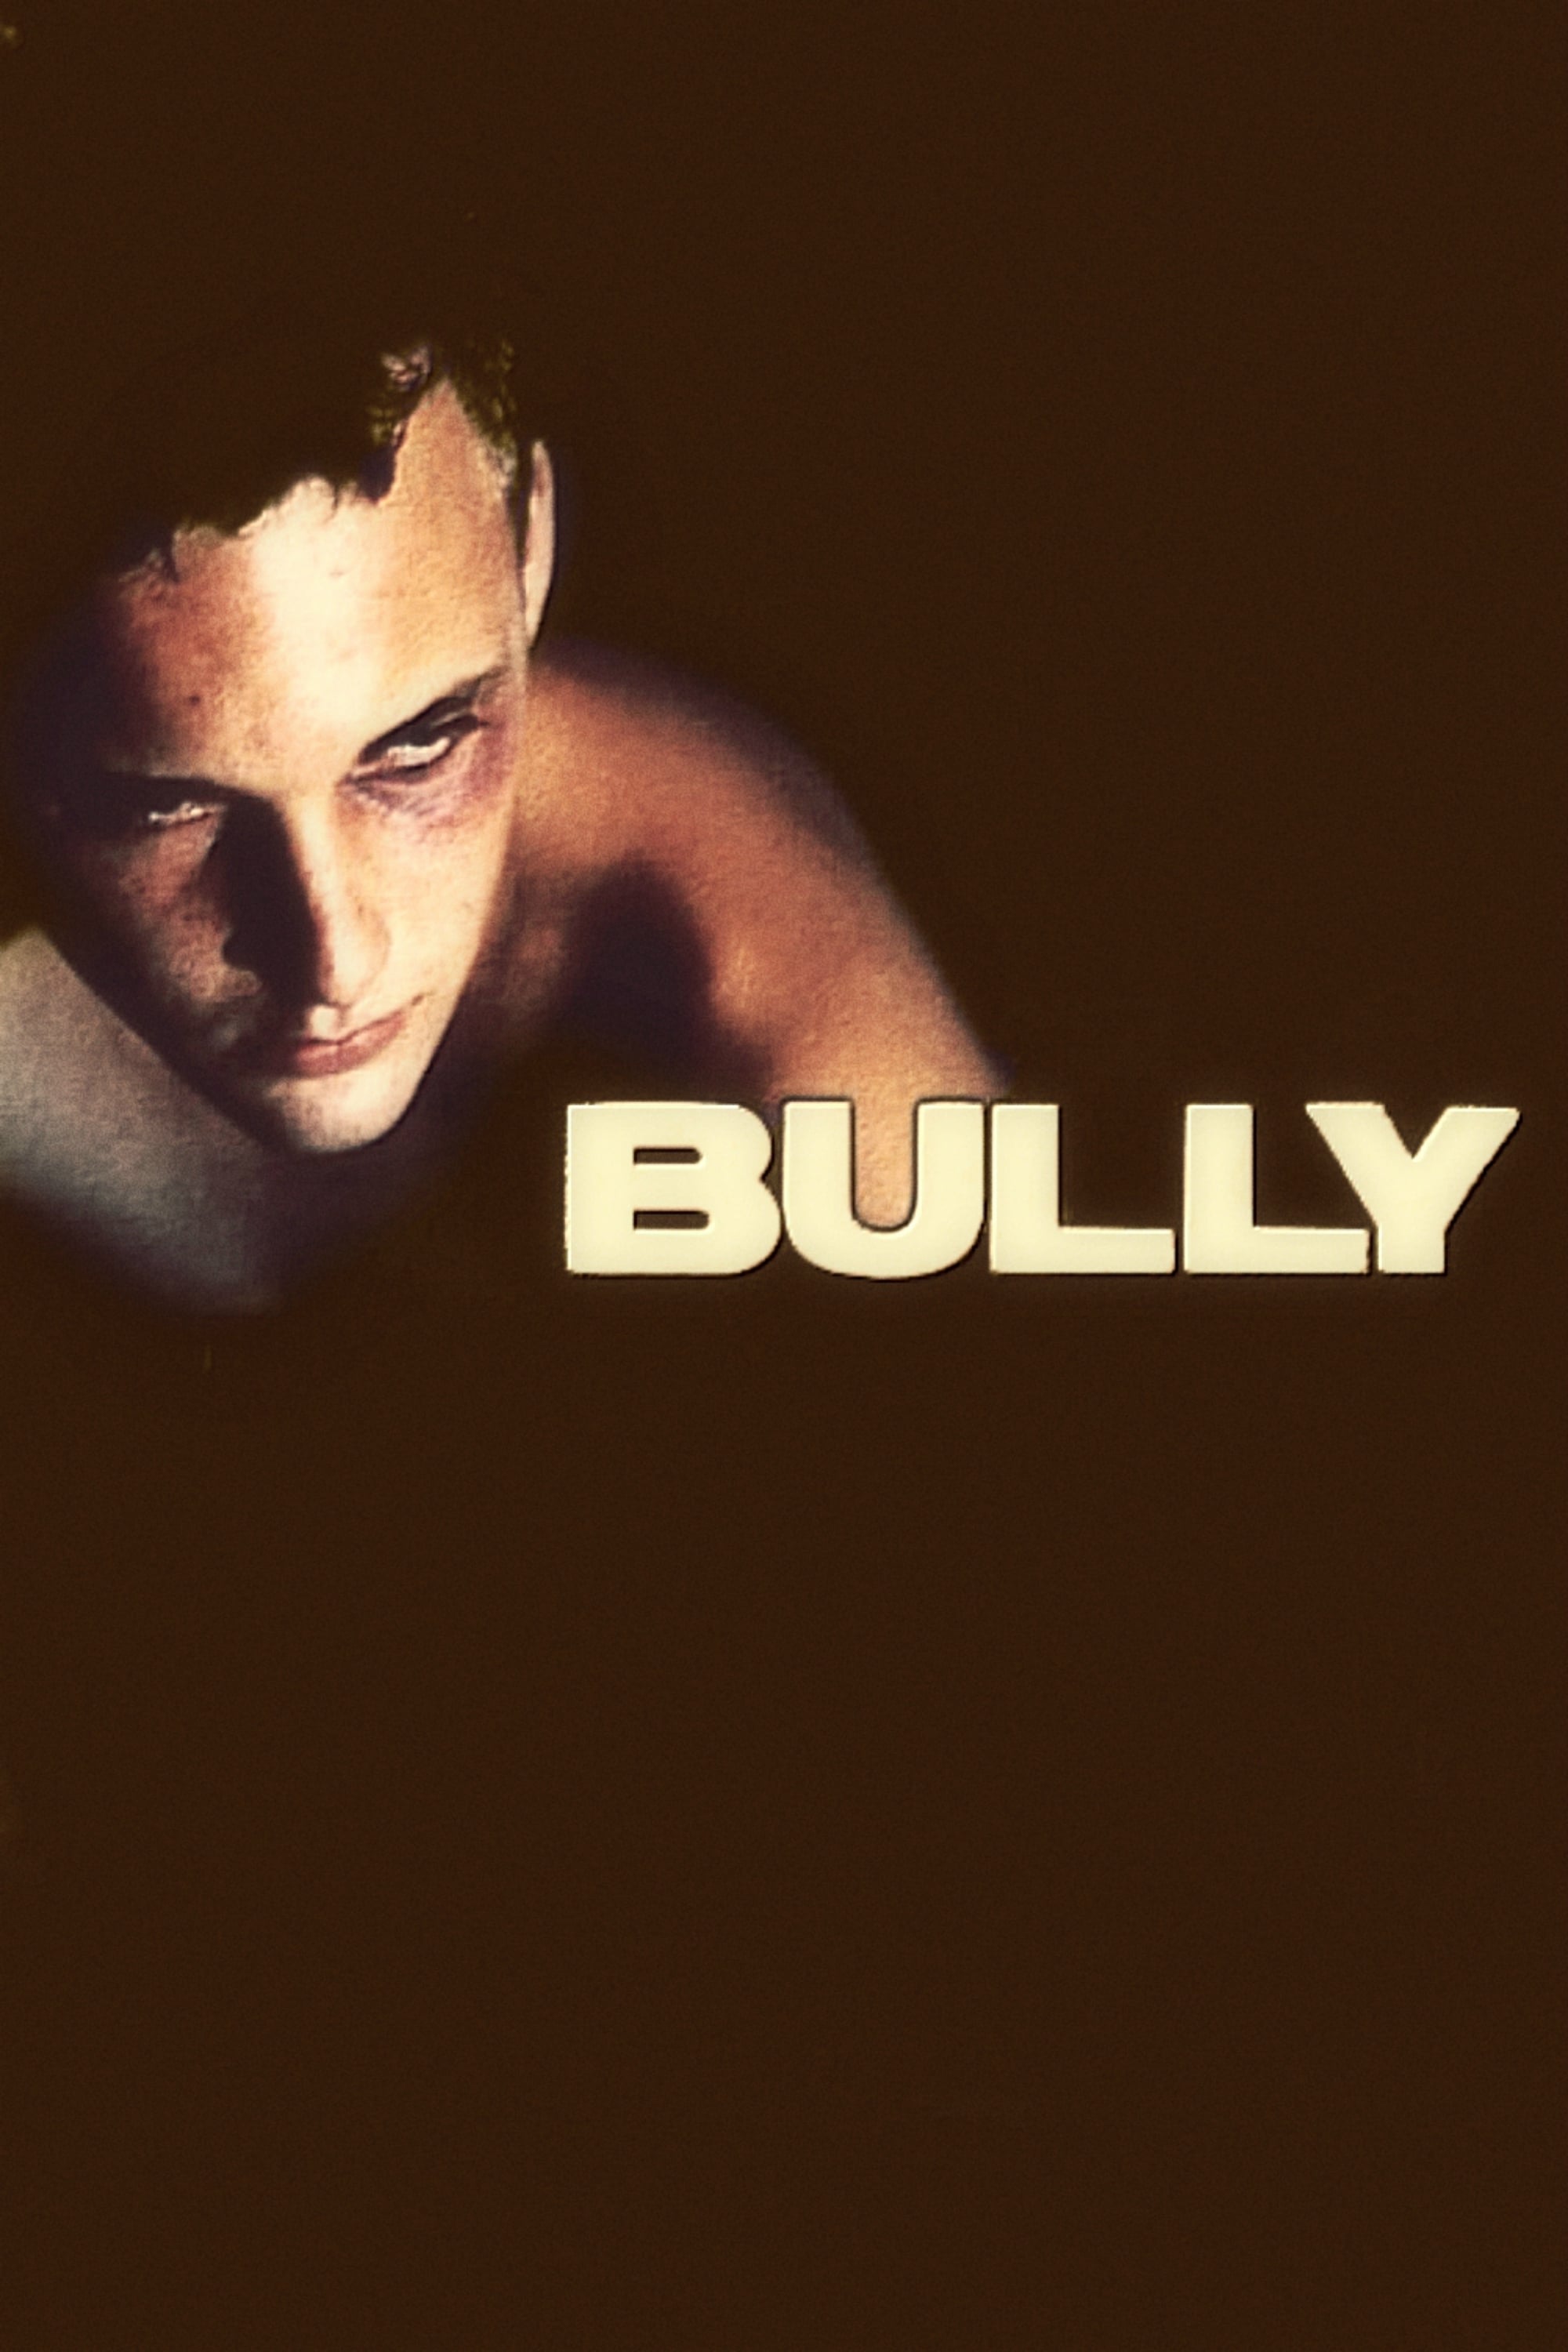 Hung Bạo (Bully) [2001]